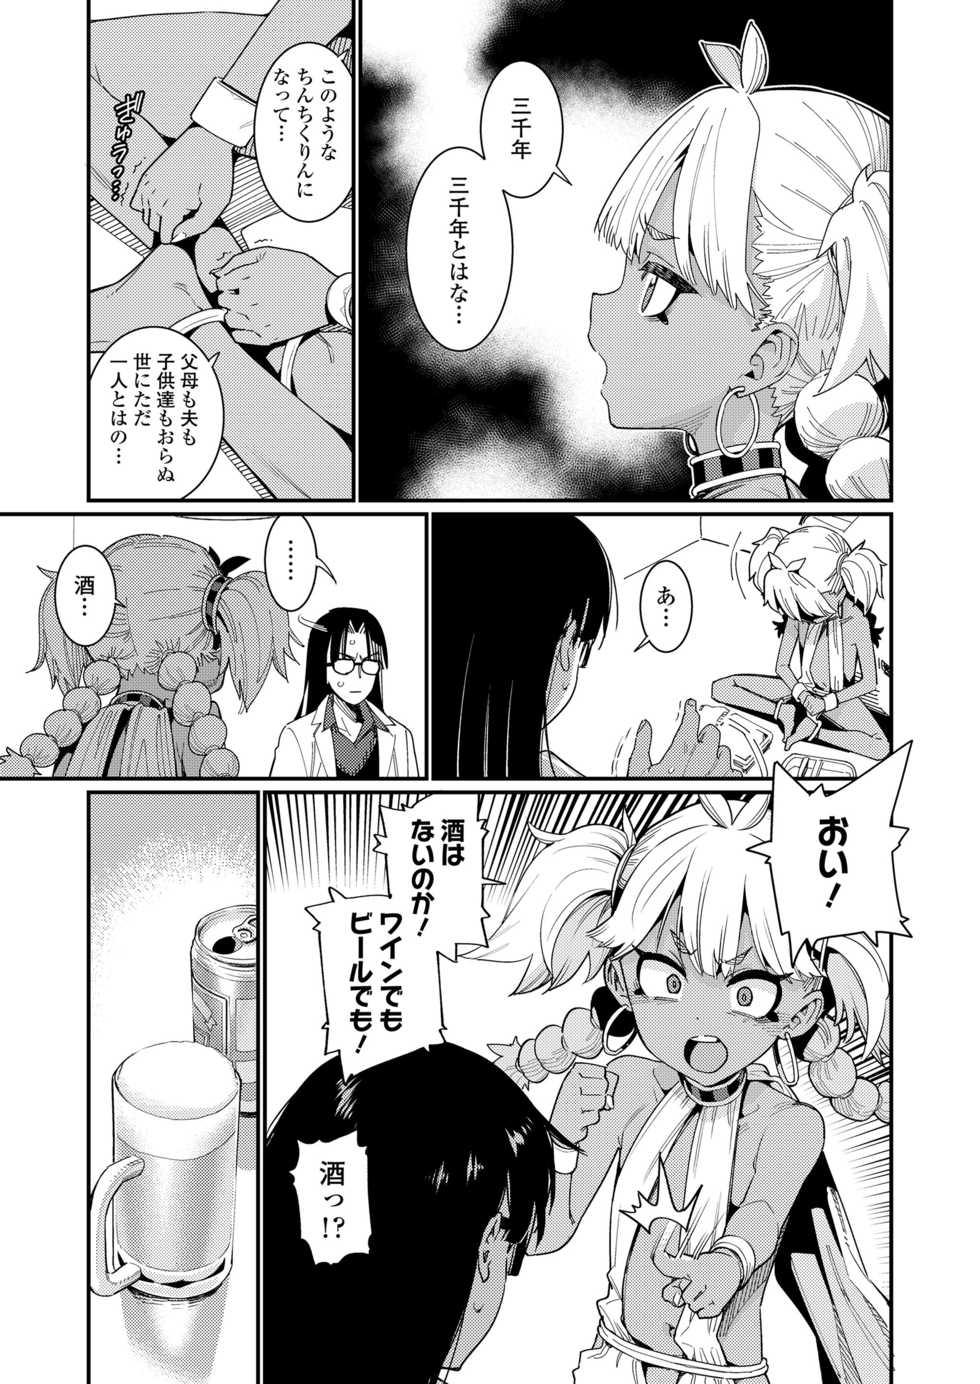 Towako 10 [Digital] - Page 9